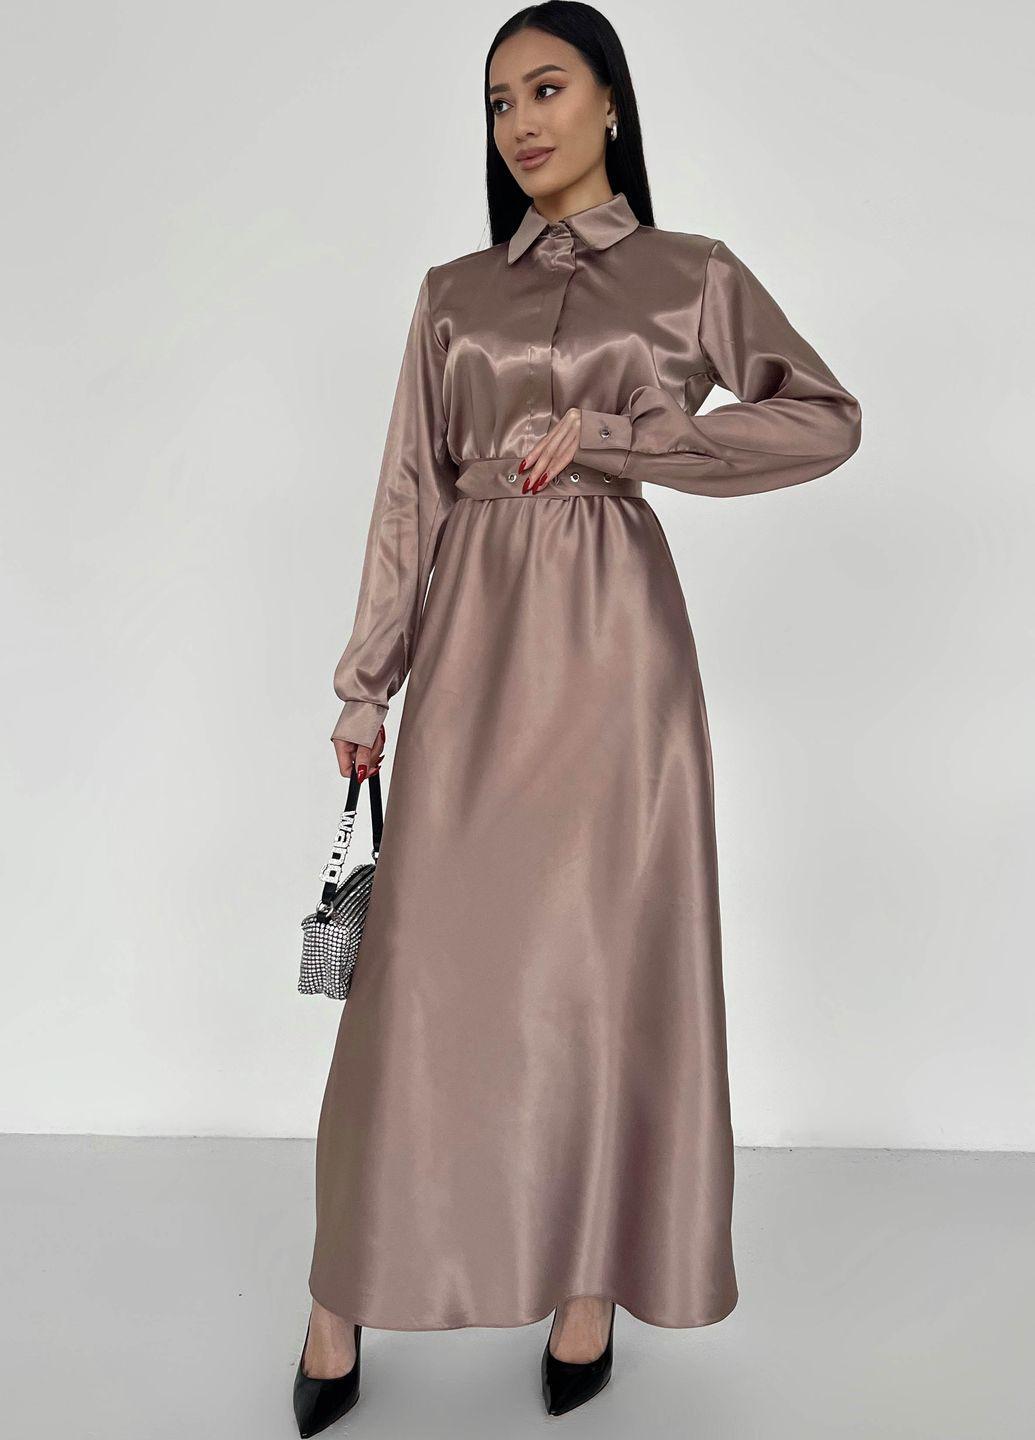 Светло-коричневое праздничный, вечернее платье из атласа цвета мокко Jadone Fashion однотонное